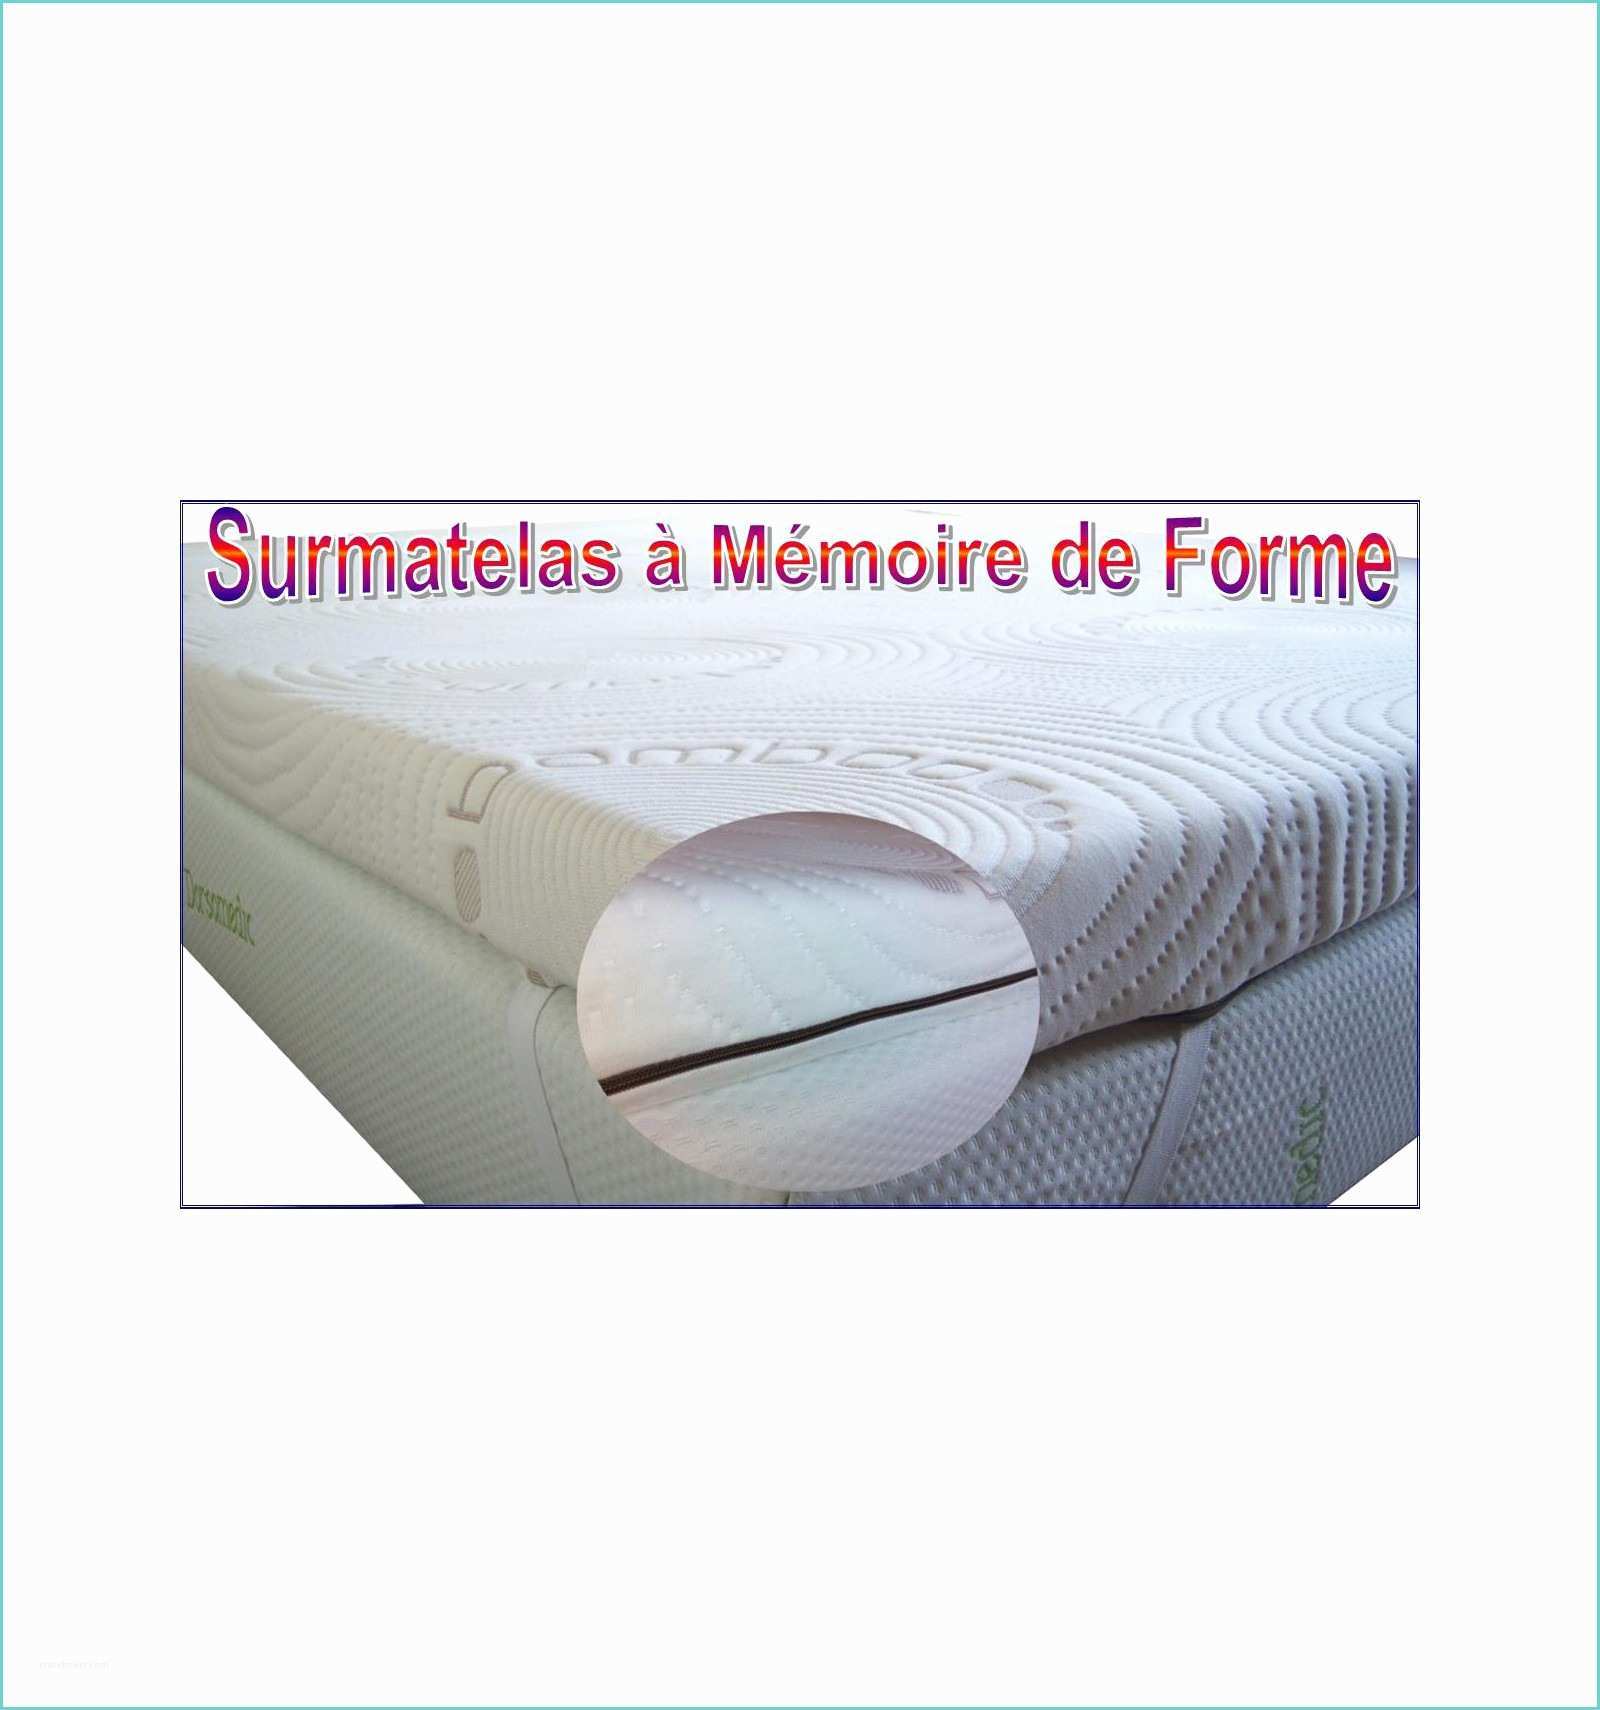 Surmatelas Memoire De forme Amazon Surmatelas Medical 140x190 à Mémoire De forme Contre Les